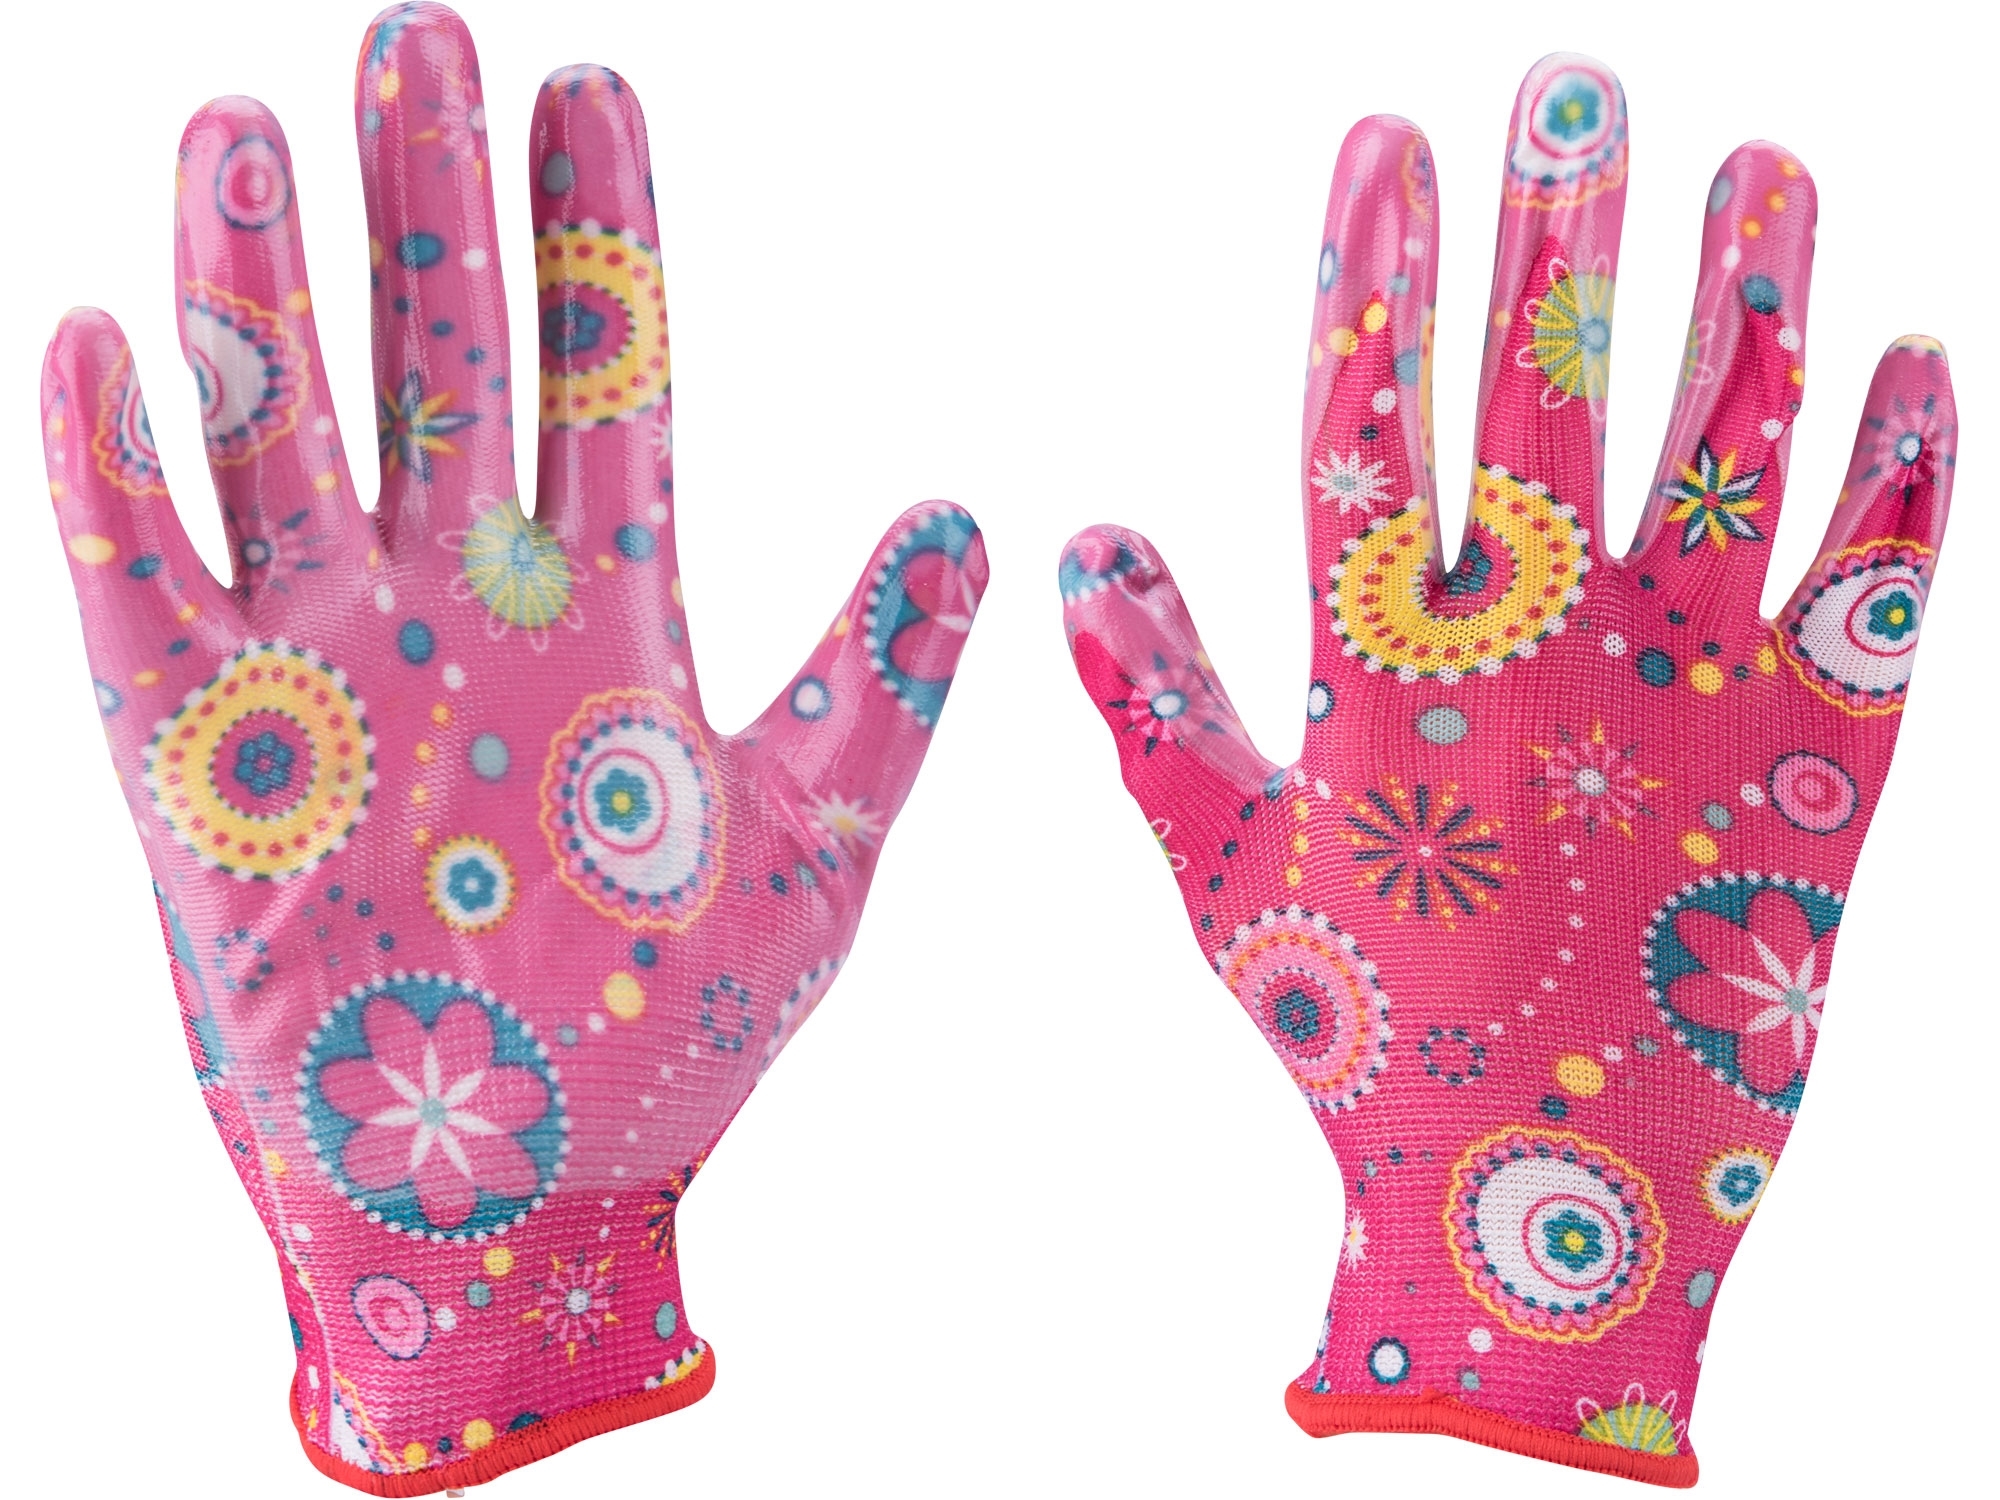 EXTOL Lady Pracovní rukavice zahradní nylonové polomáčené v nitrilu, velikost 7 - růžové ZAHRADA Sklad6 3013 100